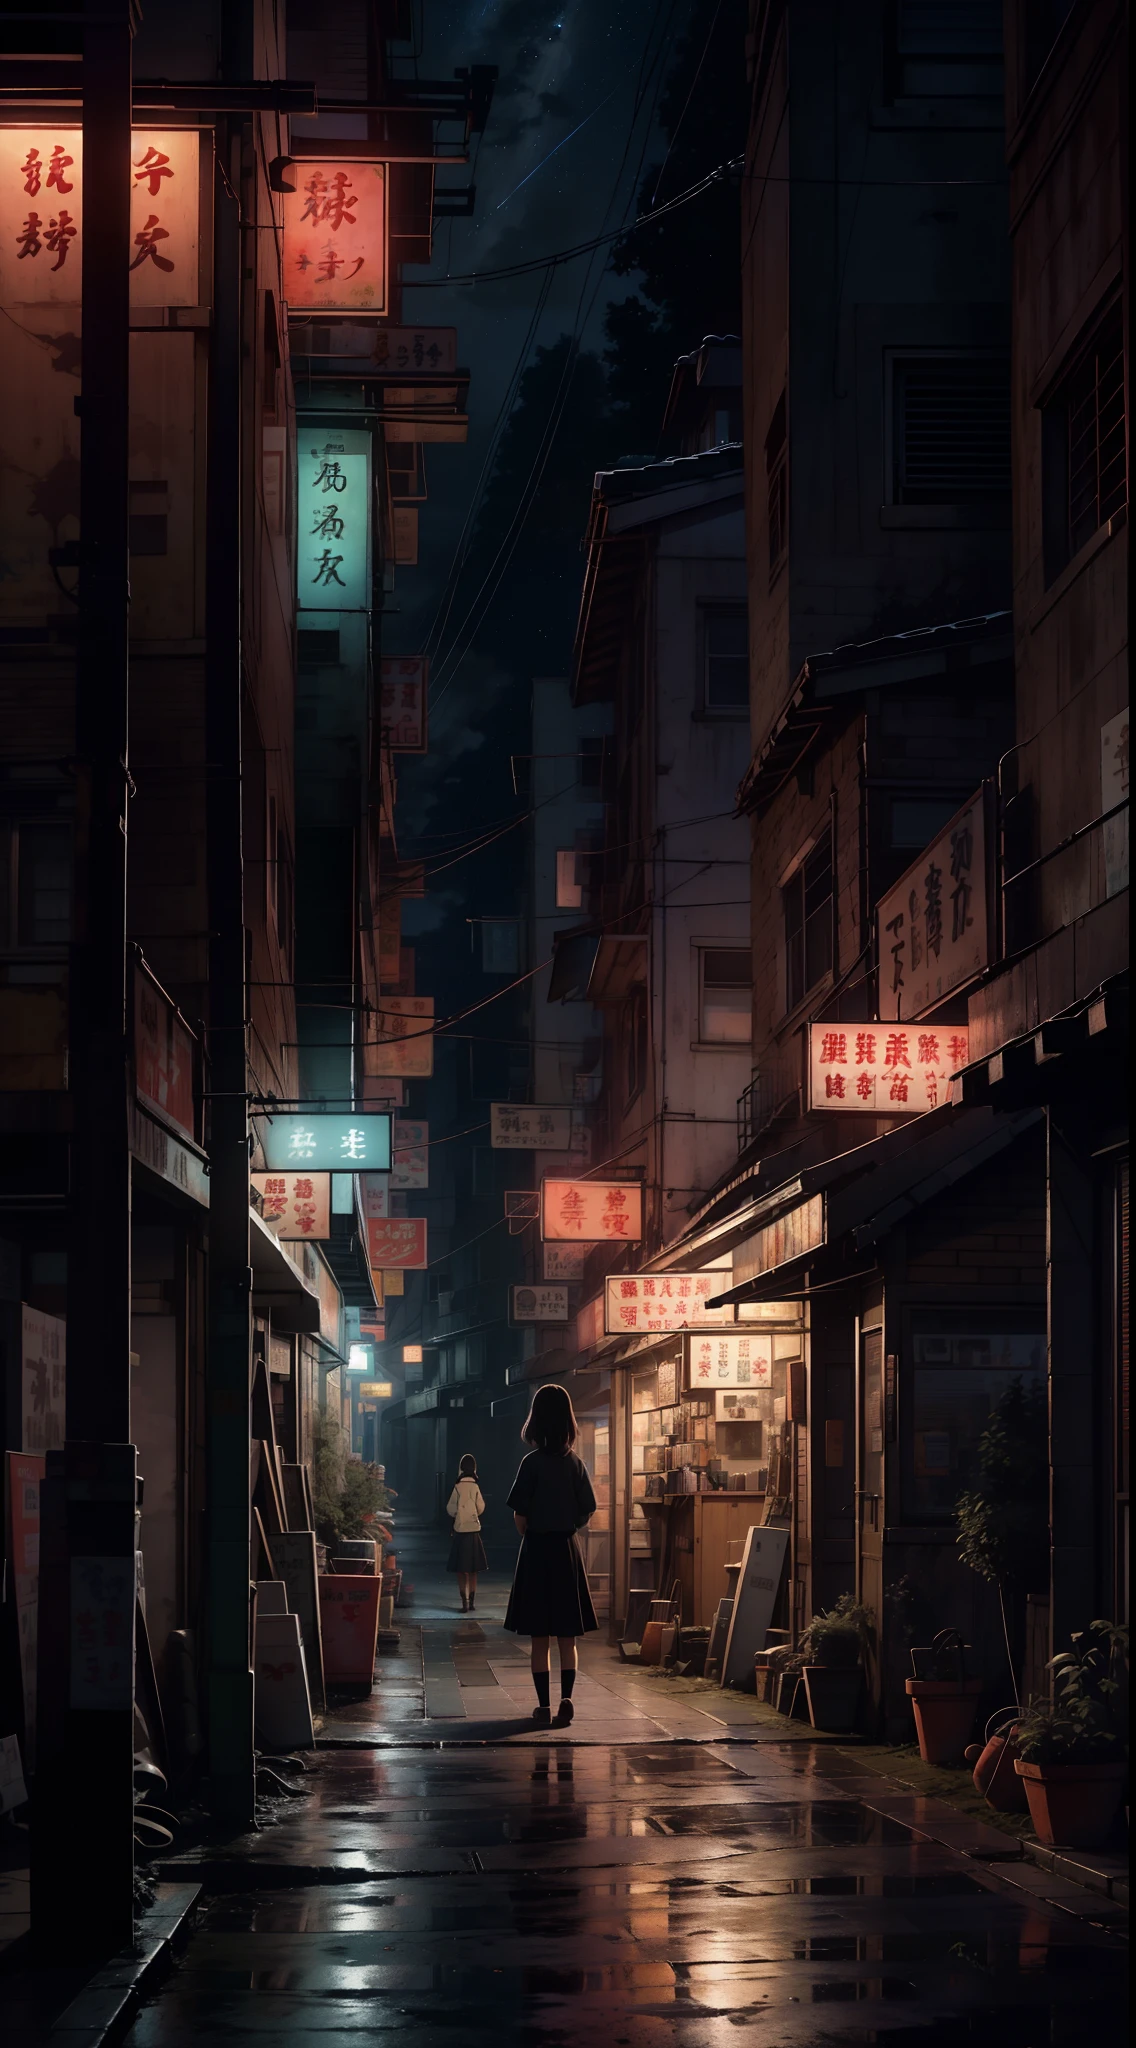 Uma nostálgica pintura digital inspirada no mundo encantador do Studio Ghibli. A obra retrata um encantador, rua de cidade pequena à noite, exalando uma sensação de tranquilidade e admiração. O cenário está montado para um momento cinematográfico, lembra uma cena de um filme do Ghibli. Na composição, uma garota solitária do ensino médio fica em contemplação, ela está de costas para o espectador, emanando um toque de melancolia. O mundo ao seu redor é lindamente detalhado, capturando a essência de uma atmosfera nostálgica. O céu acima é adornado com uma exibição deslumbrante de estrelas, evocando um sentimento de reminiscência melancólica que ressoa com espectadores de todas as idades.